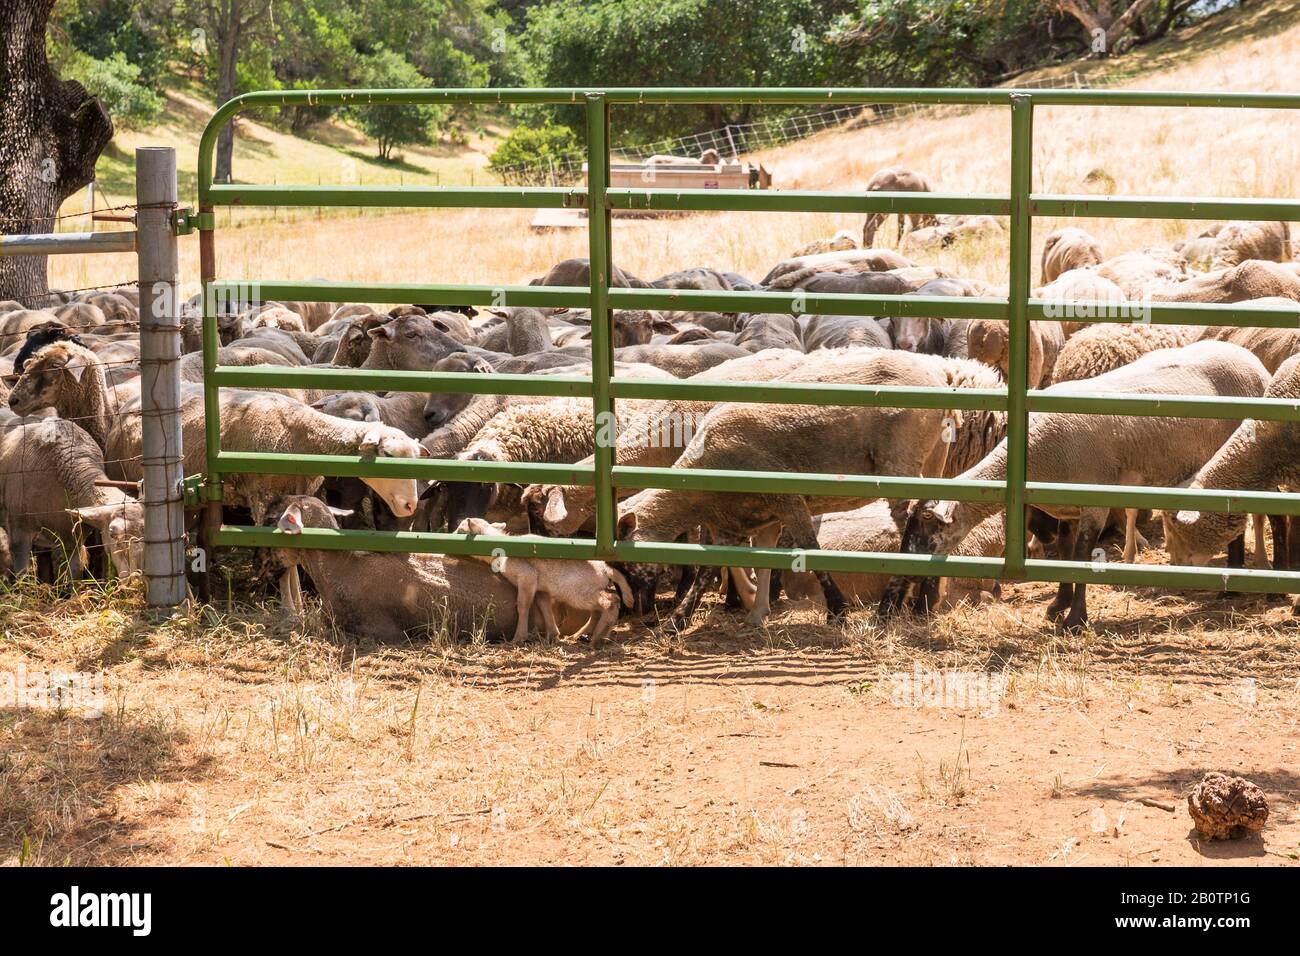 In dieser eingezäunten Wiese mit mindestens 40-50 Schafen scheint sich ein Frühlingslamm zwischen vielen Fußpaaren zu verlaufen. Stockfoto